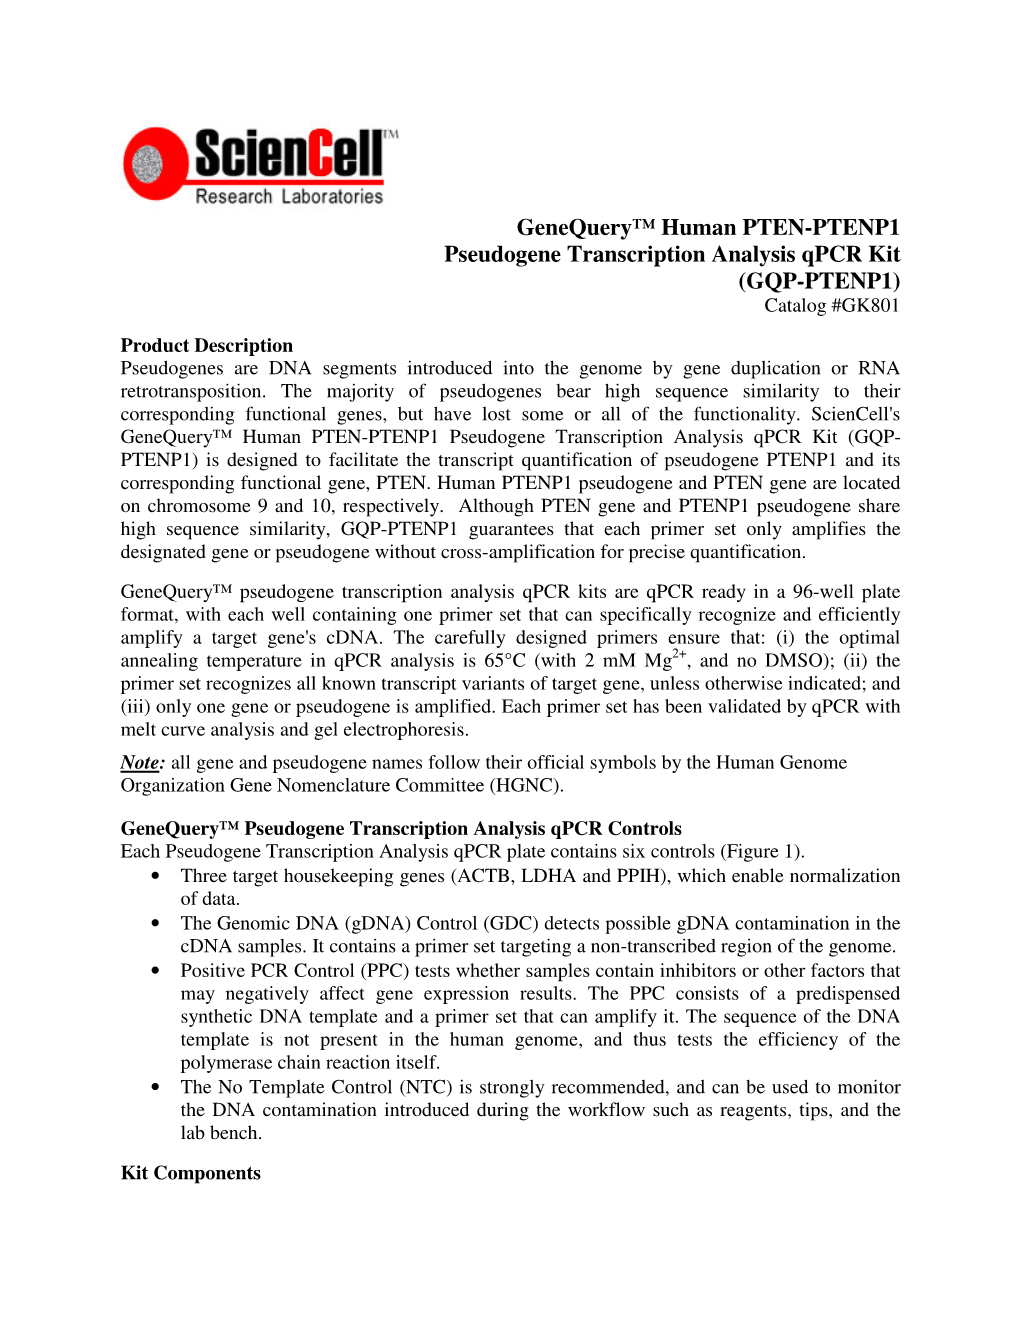 Genequery™ Human PTEN-PTENP1 Pseudogene Transcription Analysis Qpcr Kit (GQP-PTENP1)